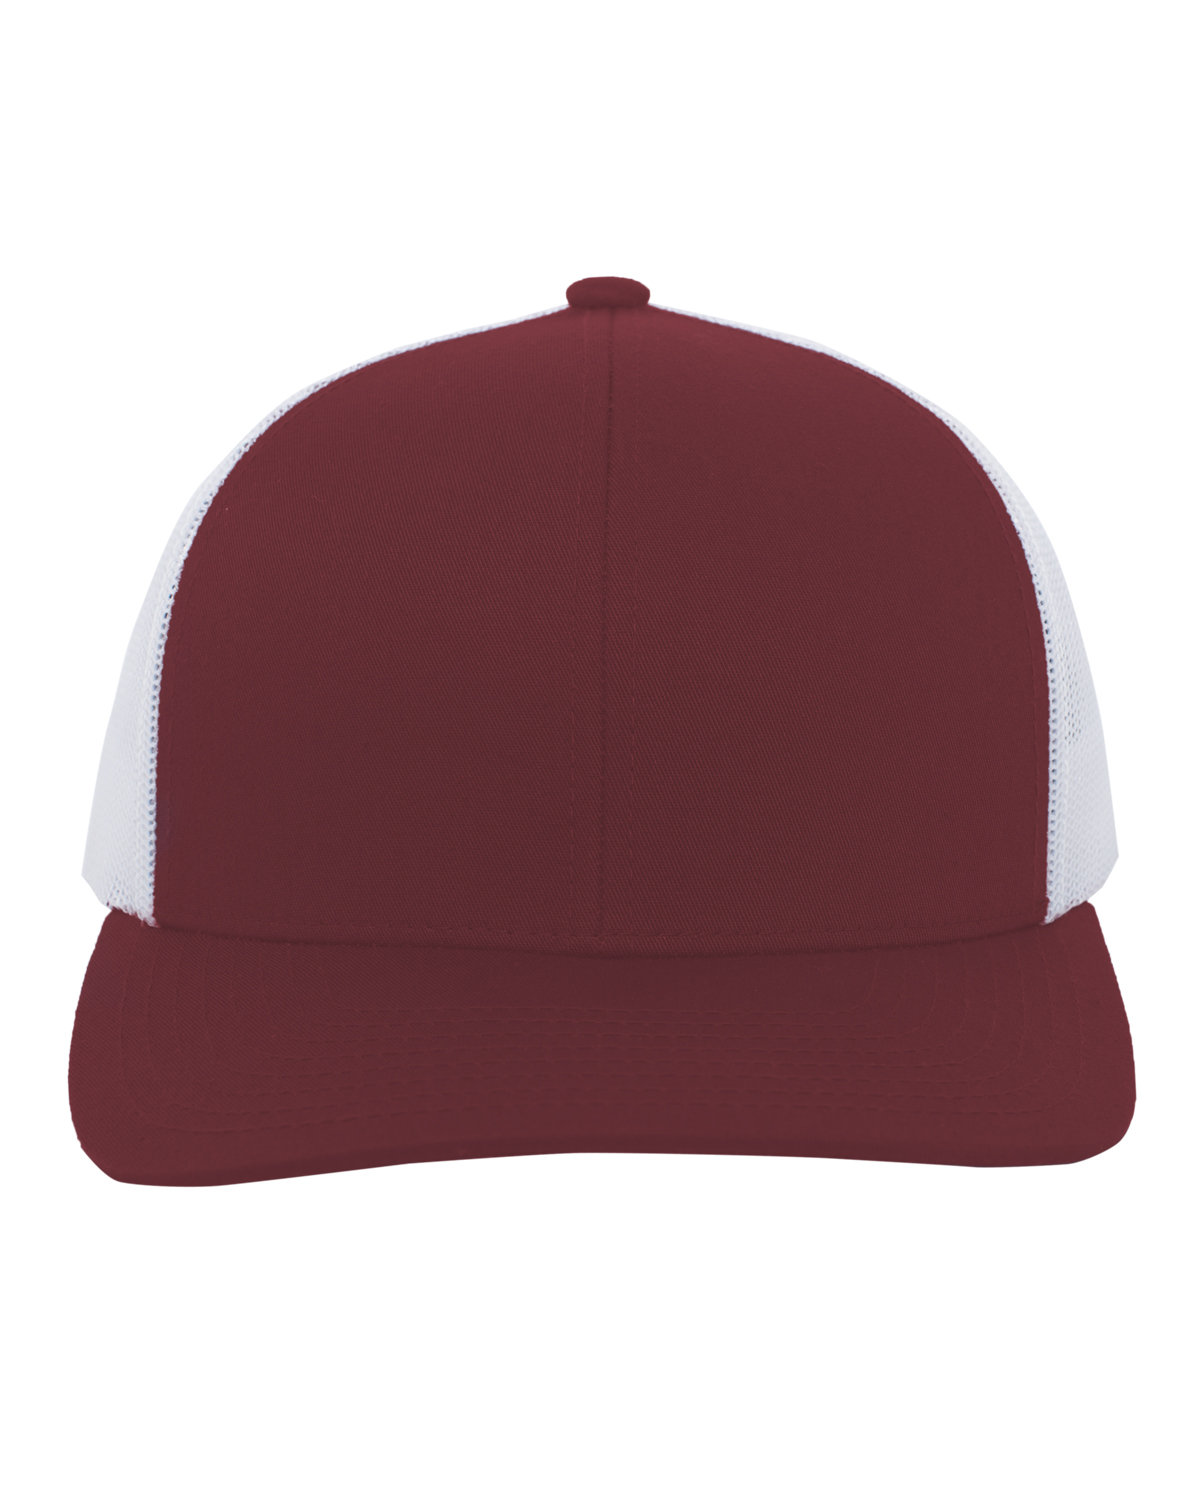 Pacific Headwear Trucker Snapback Hat CARDINAL/ WHITE 